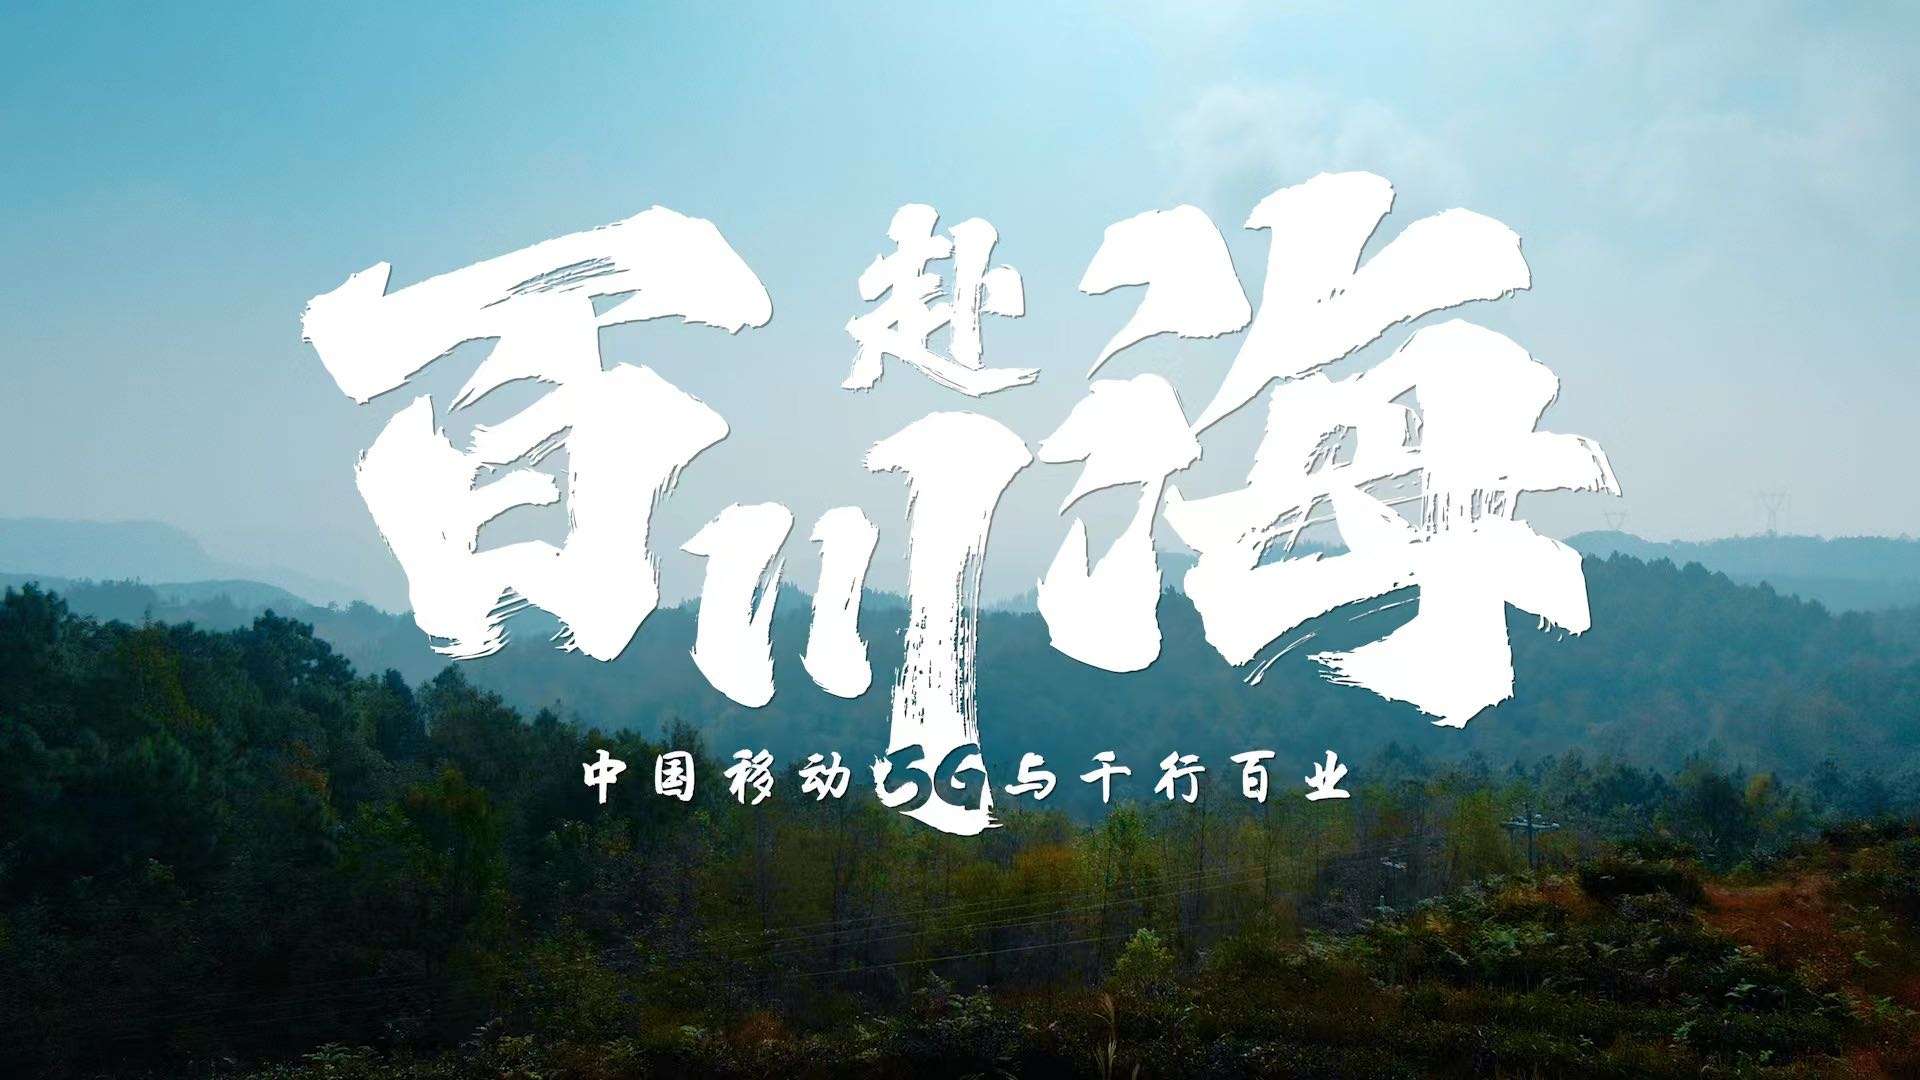 中国移动丨央视品牌故事纪录片「5G与百业」百川赴海